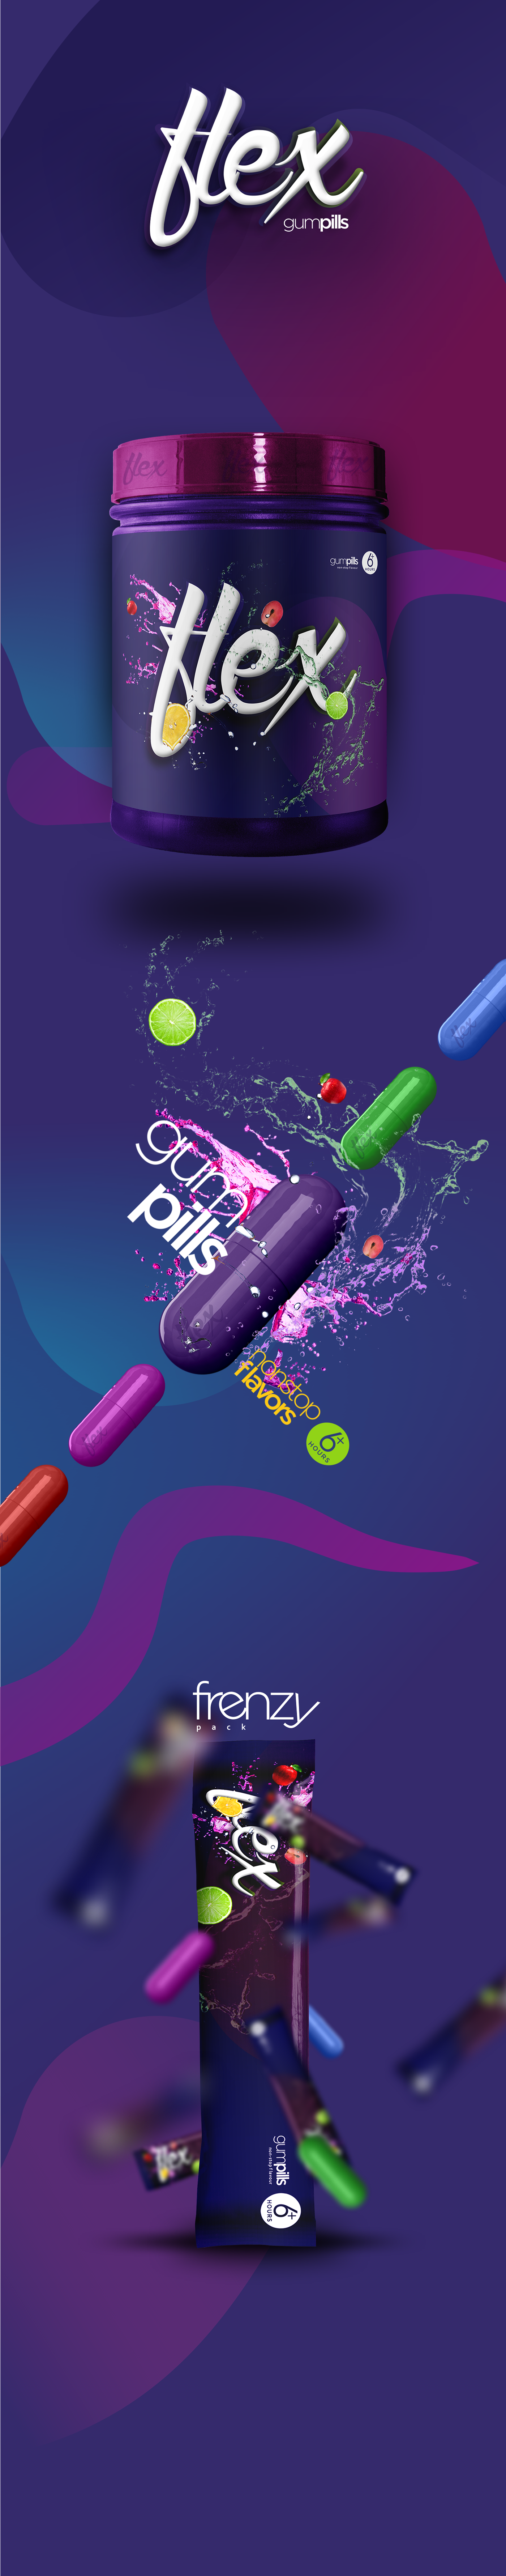 flex gum purple package design  pills Fun product kofo lagos nigeria